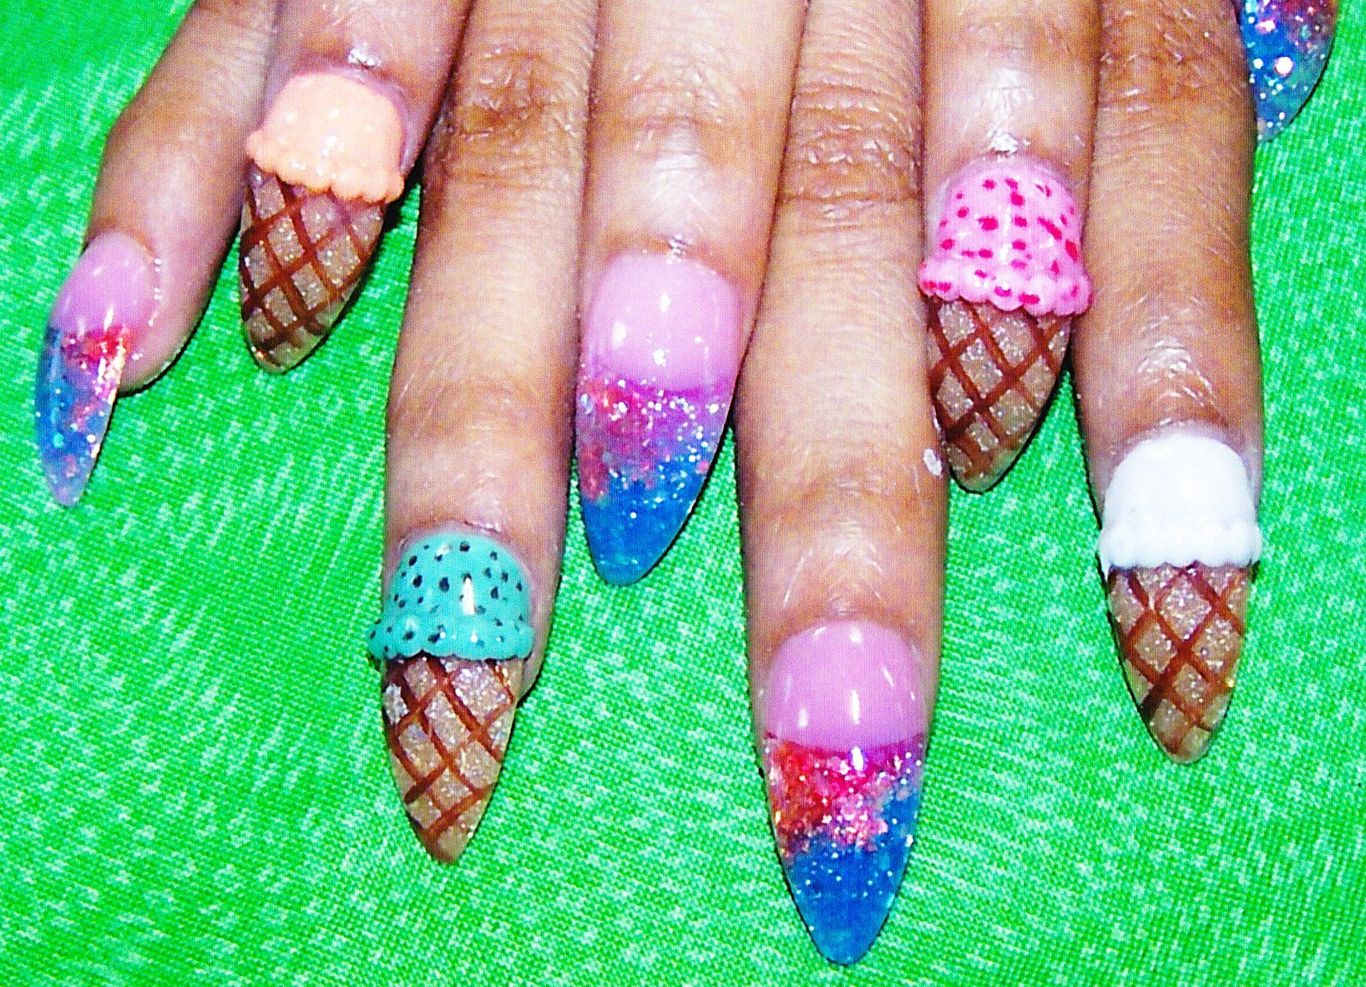 10. Ice Cream Cone Nails - wide 5